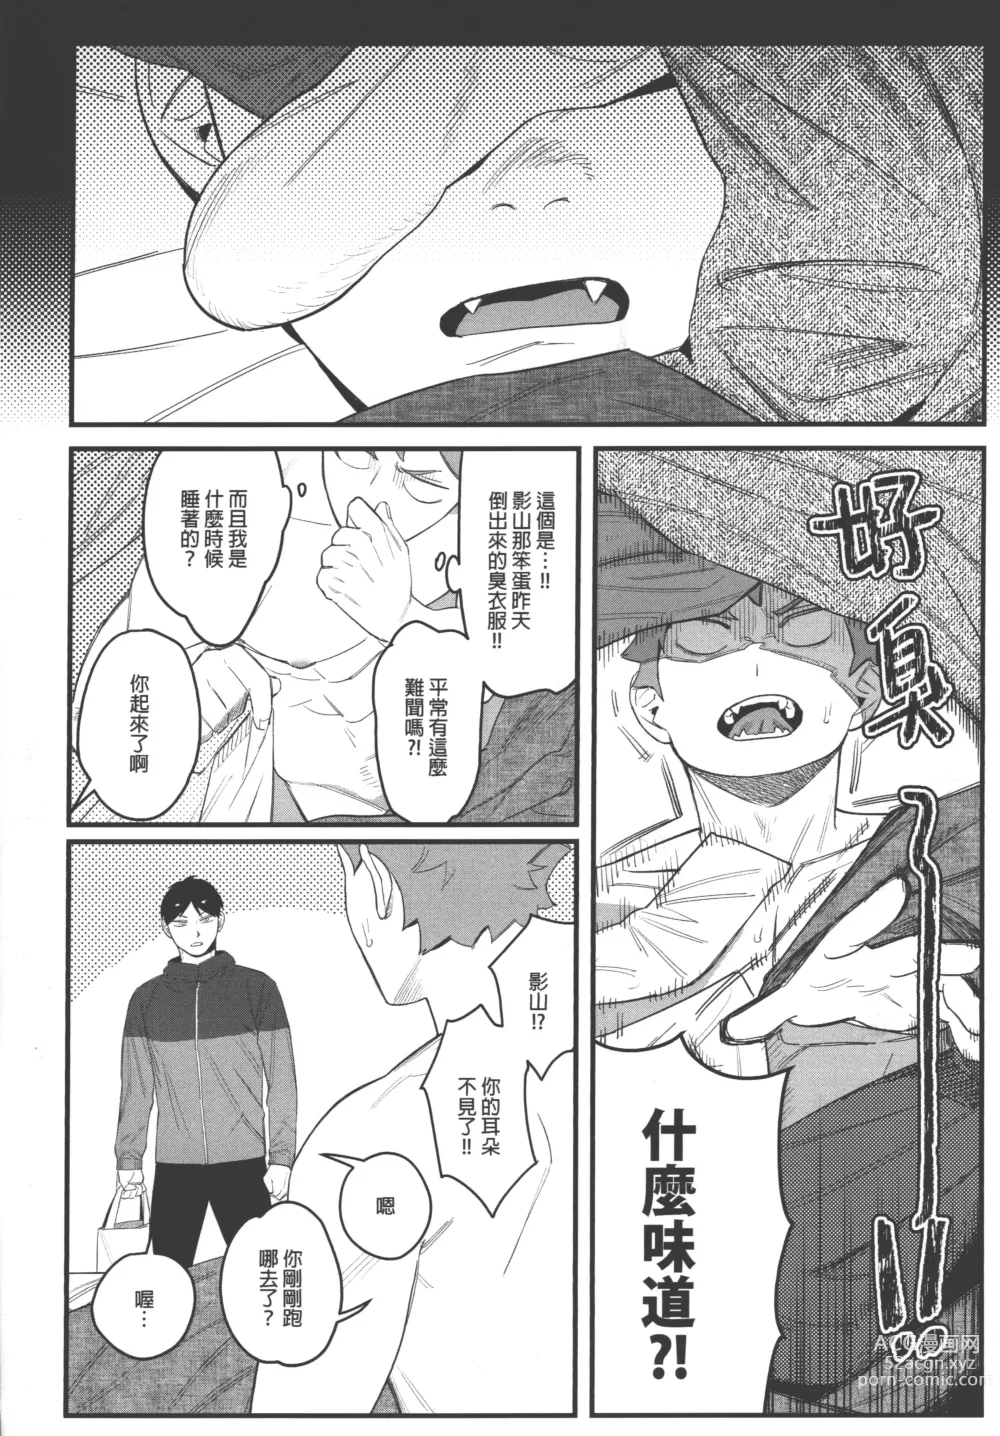 Page 24 of doujinshi 影山飛雄變成兔子了!